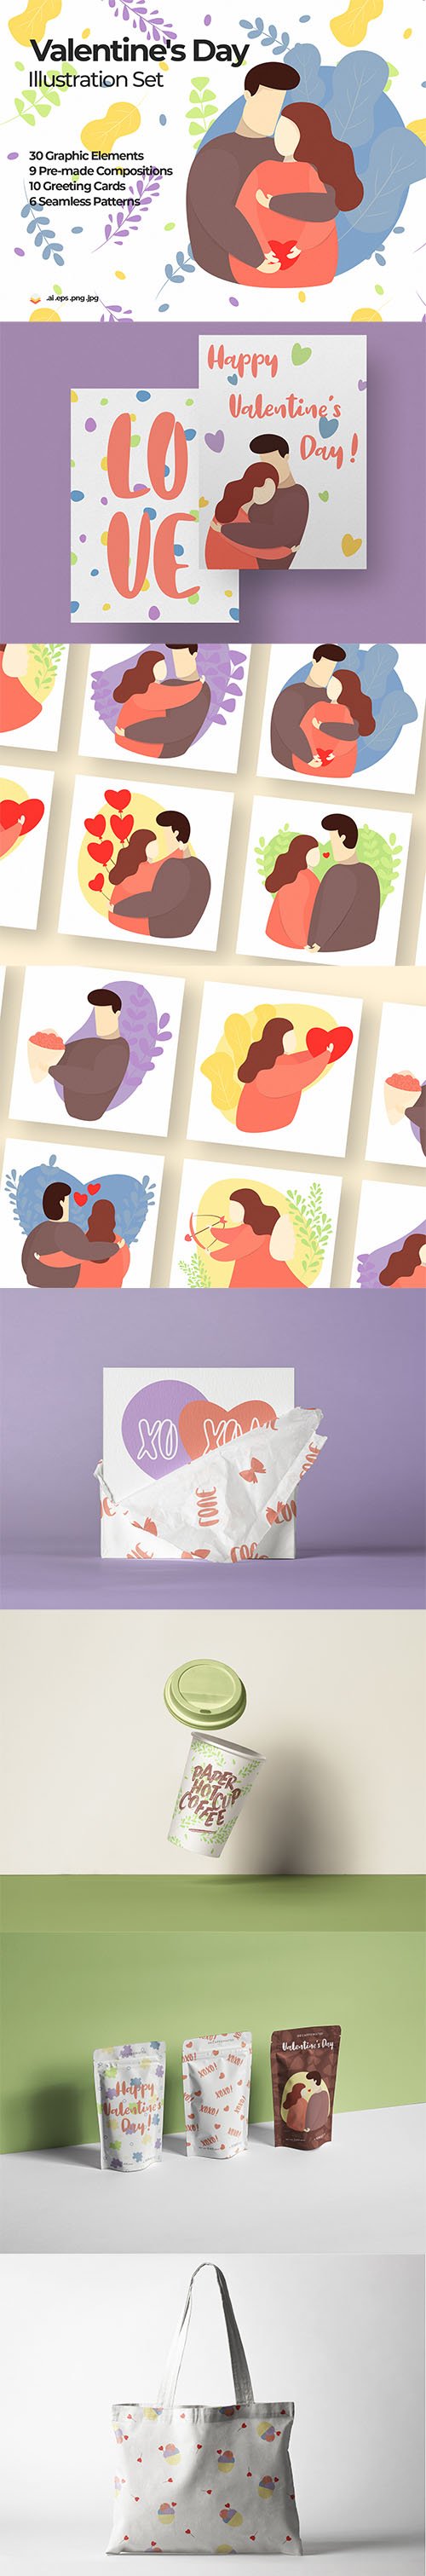 Valentine's Day Illustration Set